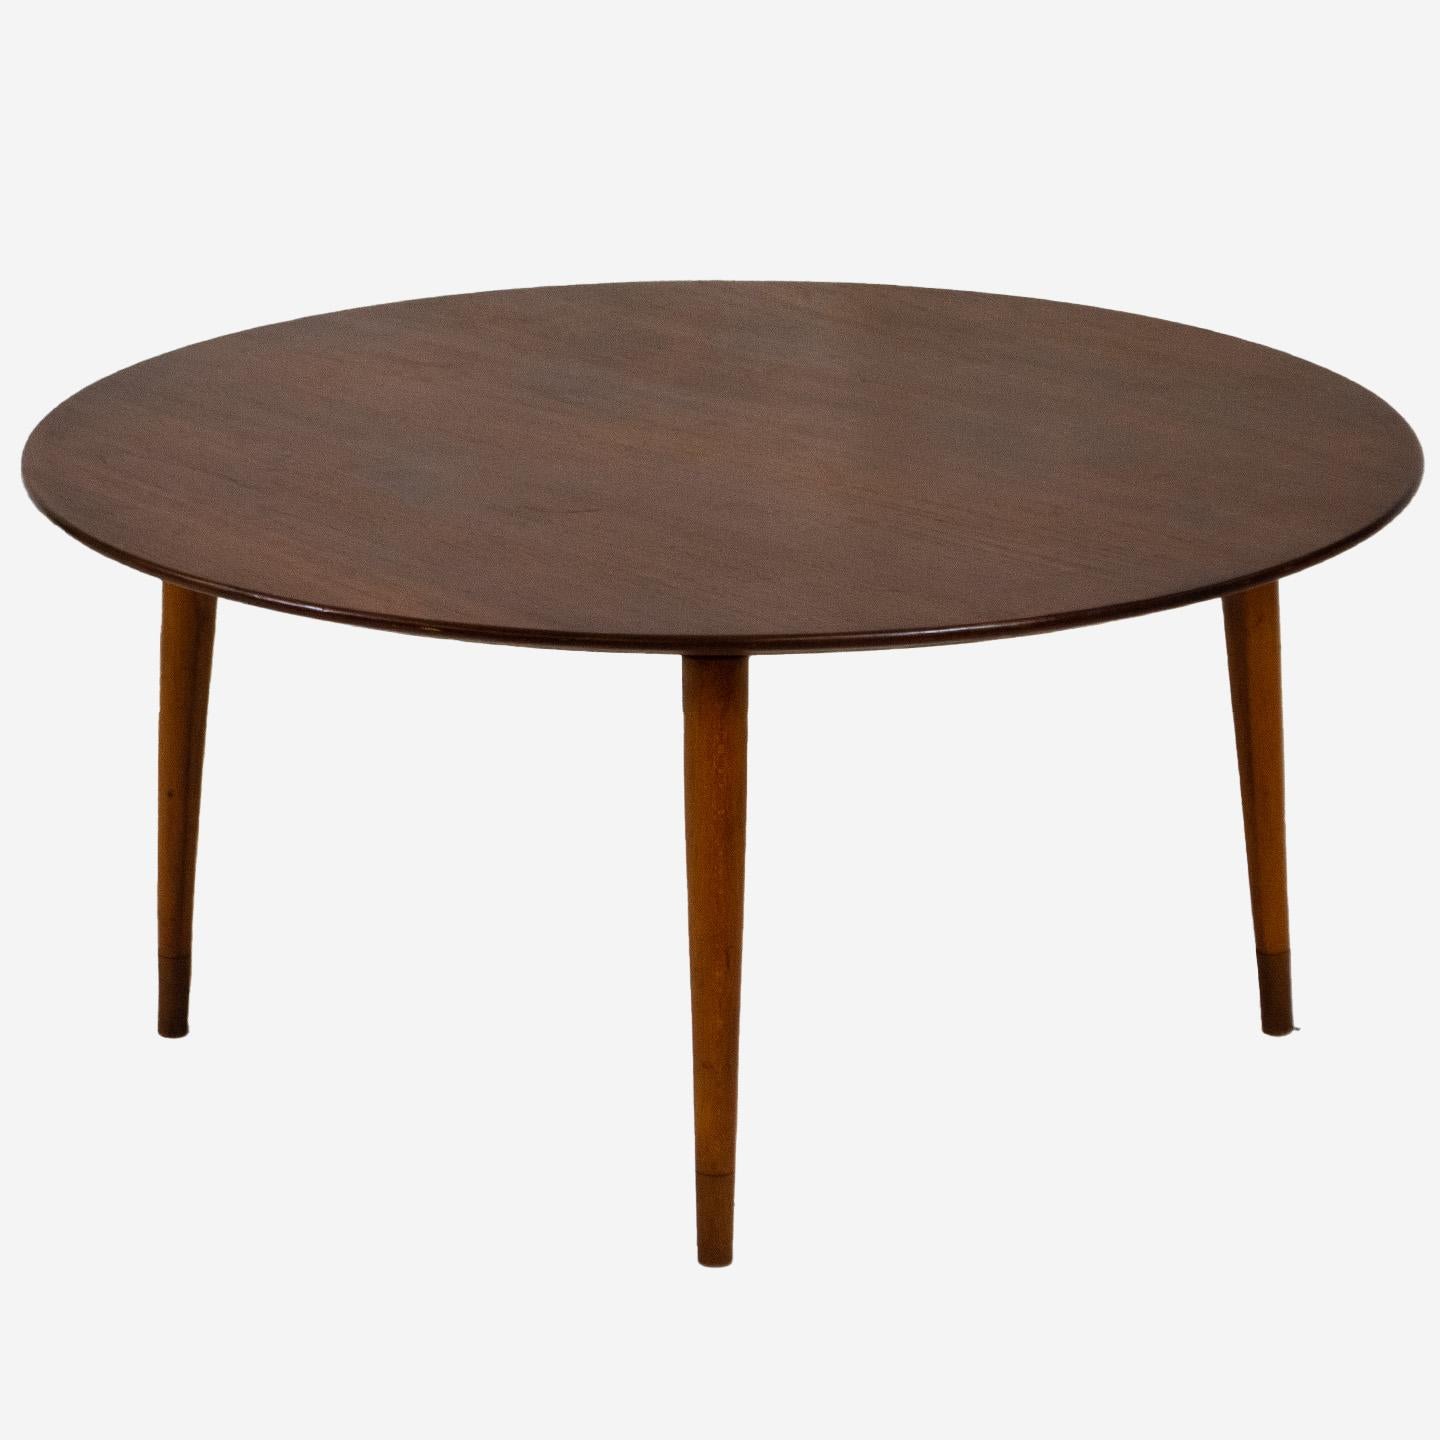 Cette table basse de style Mid-Century Modern est élégante et stylée. Le plateau de table en teck présente un beau grain de bois et est construit avec des pieds effilés élégants et fins. Incroyablement discret, le dessous révèle pourtant de jolis